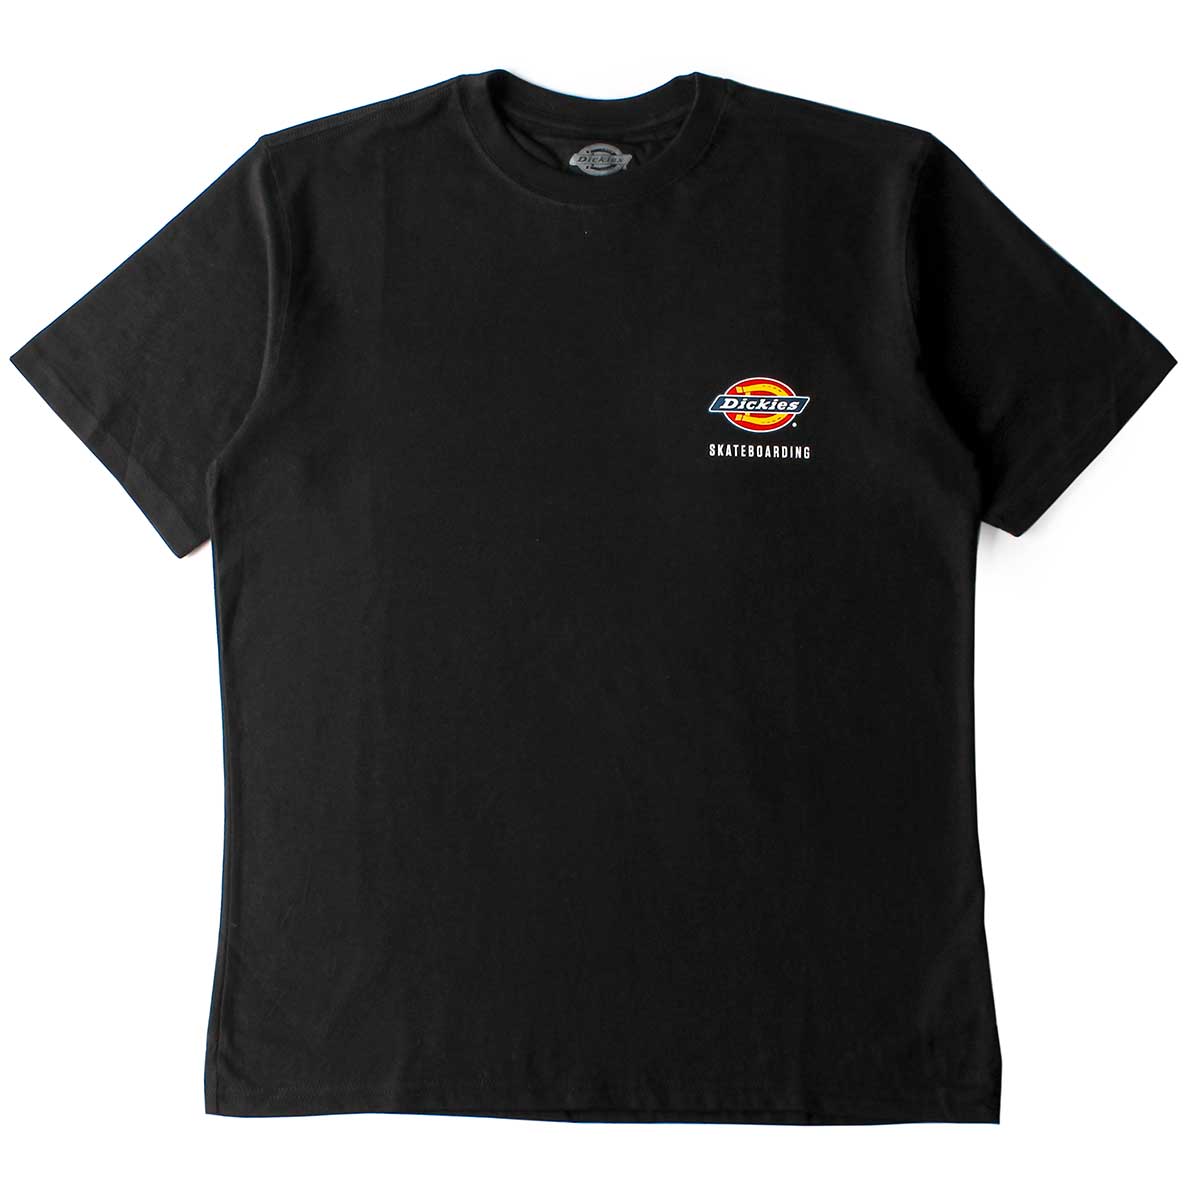 Dickies Skate Chest Logo T-Shirt - Black Size:Medium